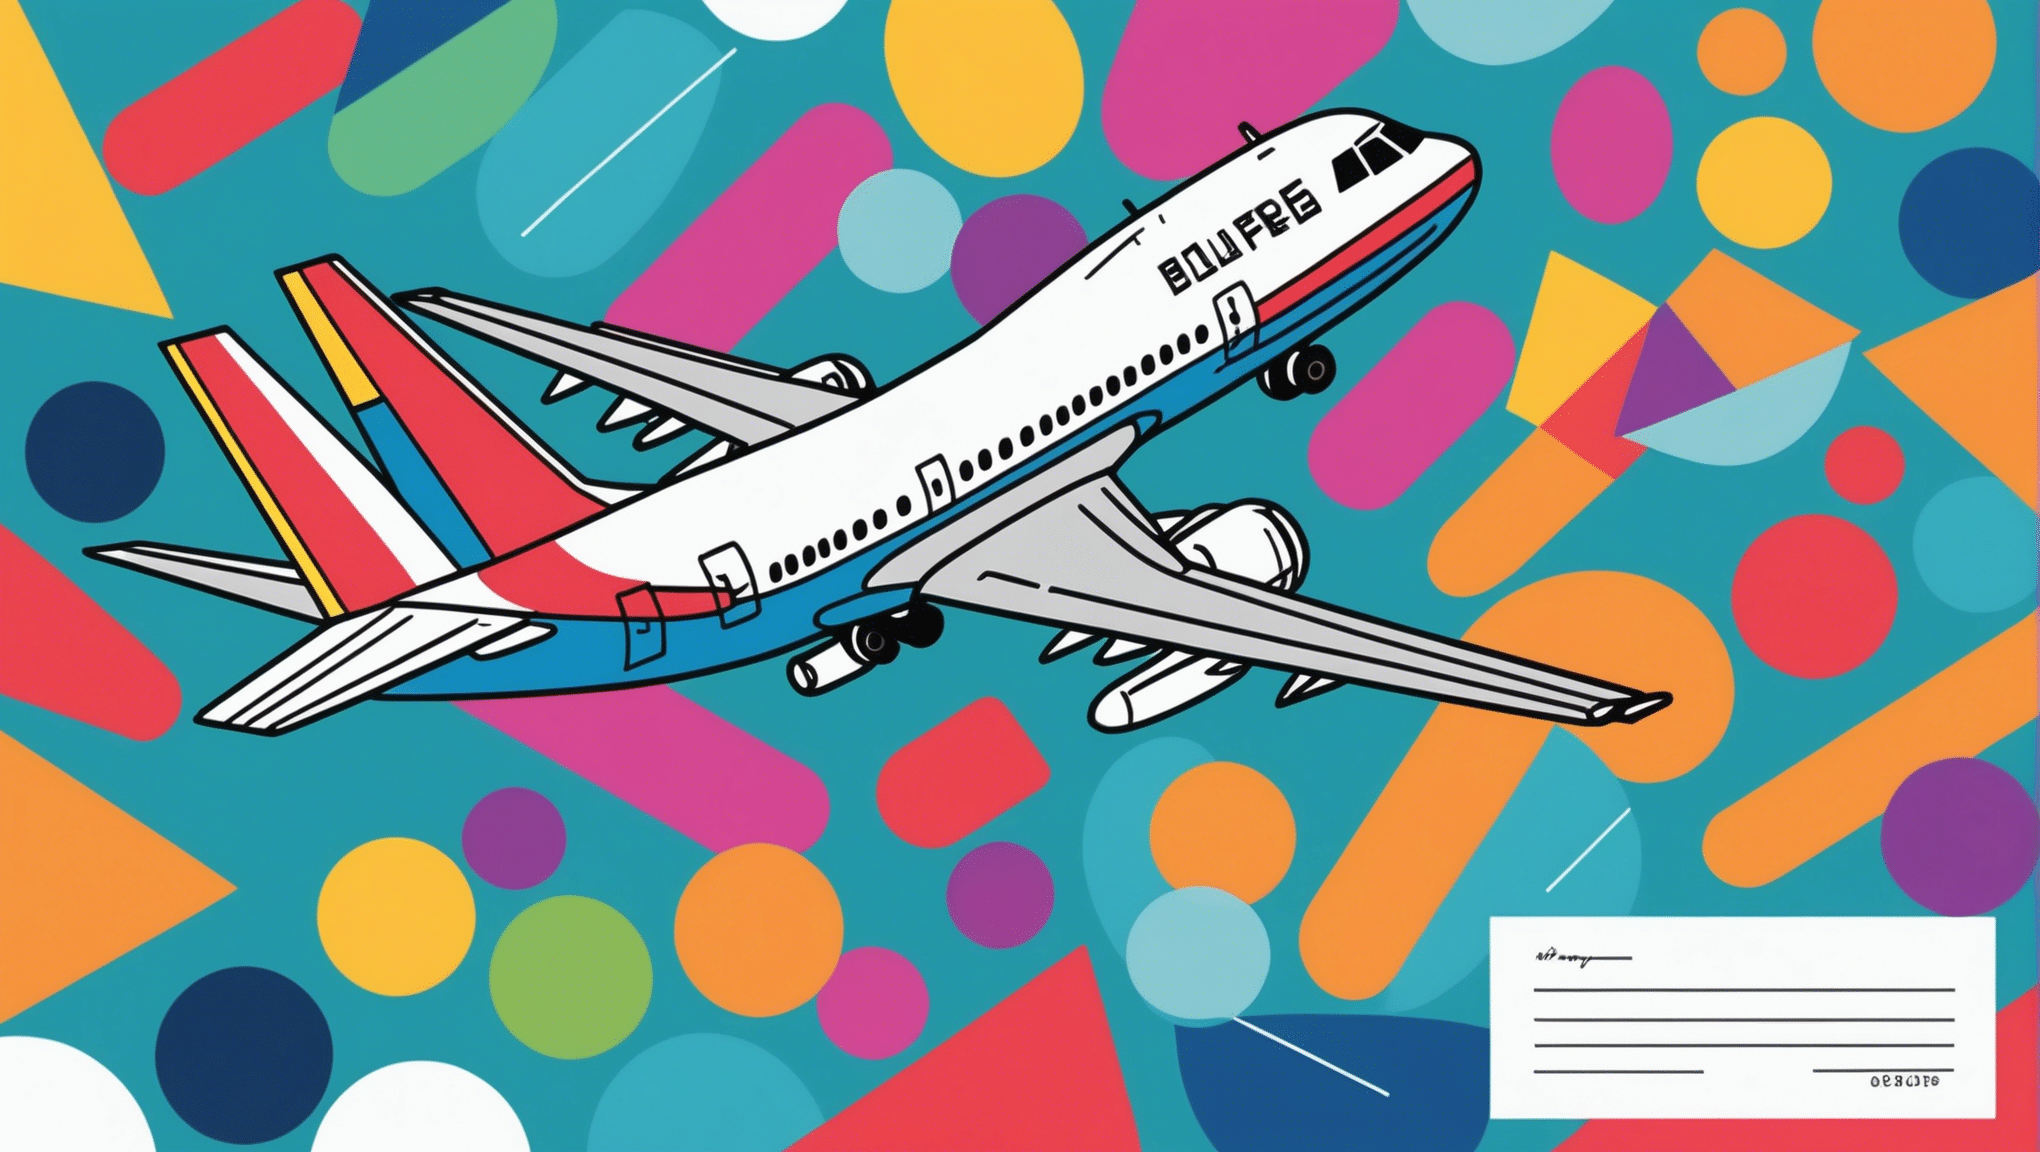 découvrez comment trouver le moment idéal pour réserver votre billet d'avion et économiser sur votre prochain voyage.